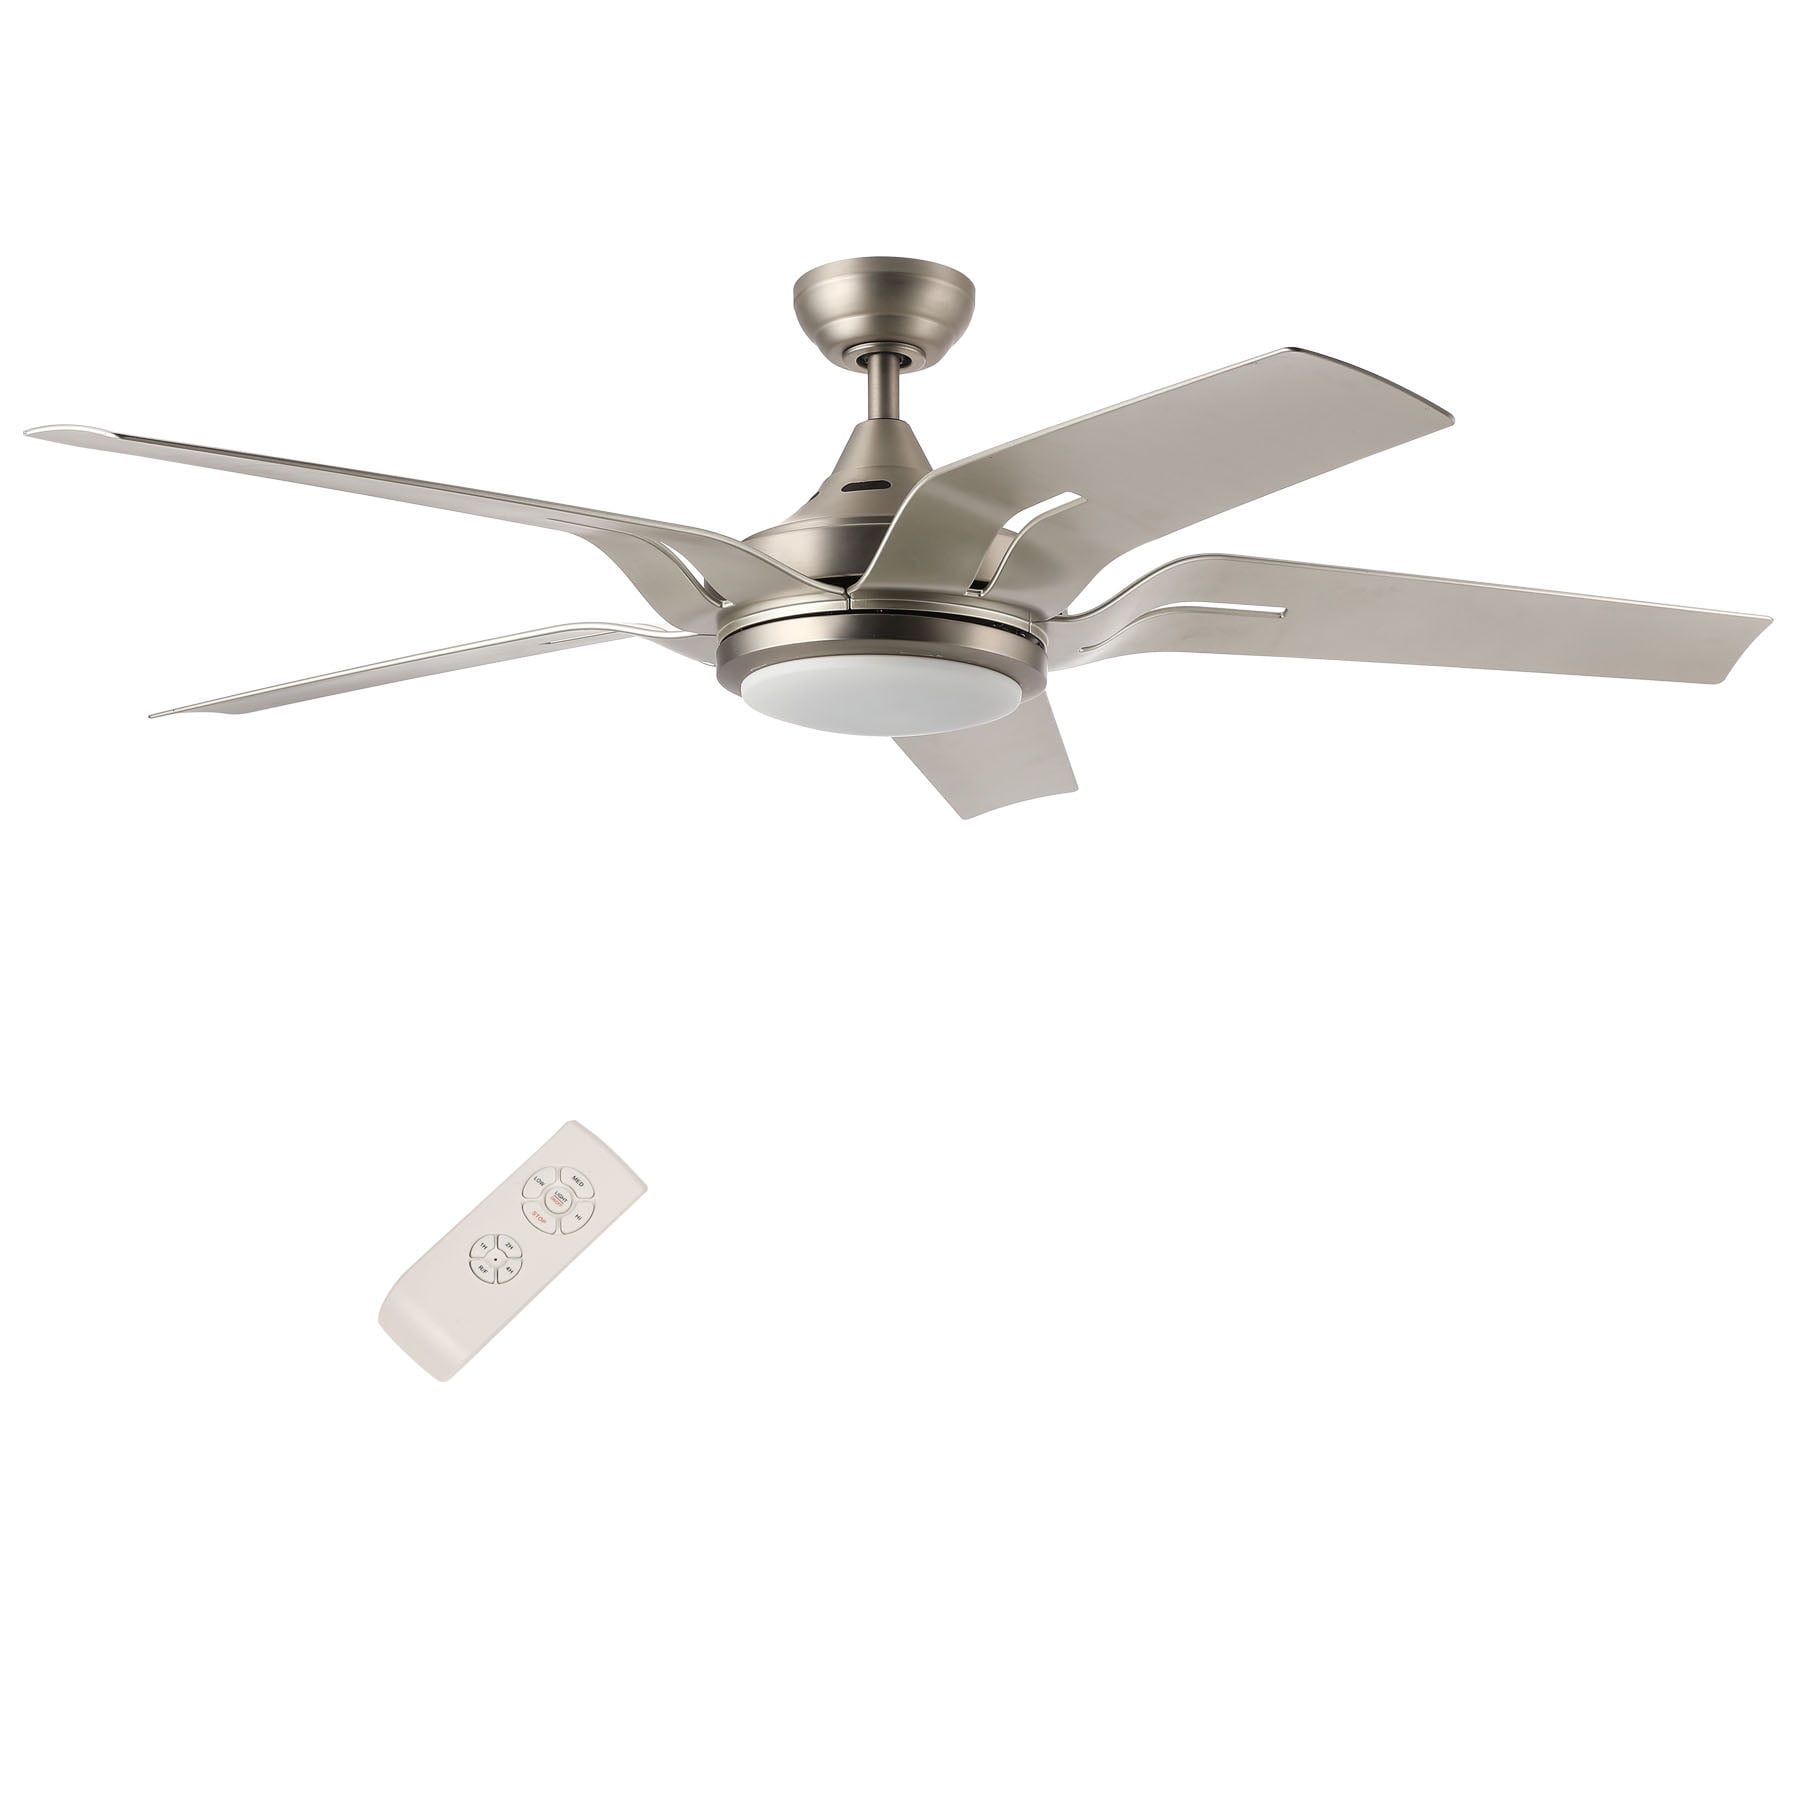 600mm Ceiling Fan white color in combo 2 fan free shipping 